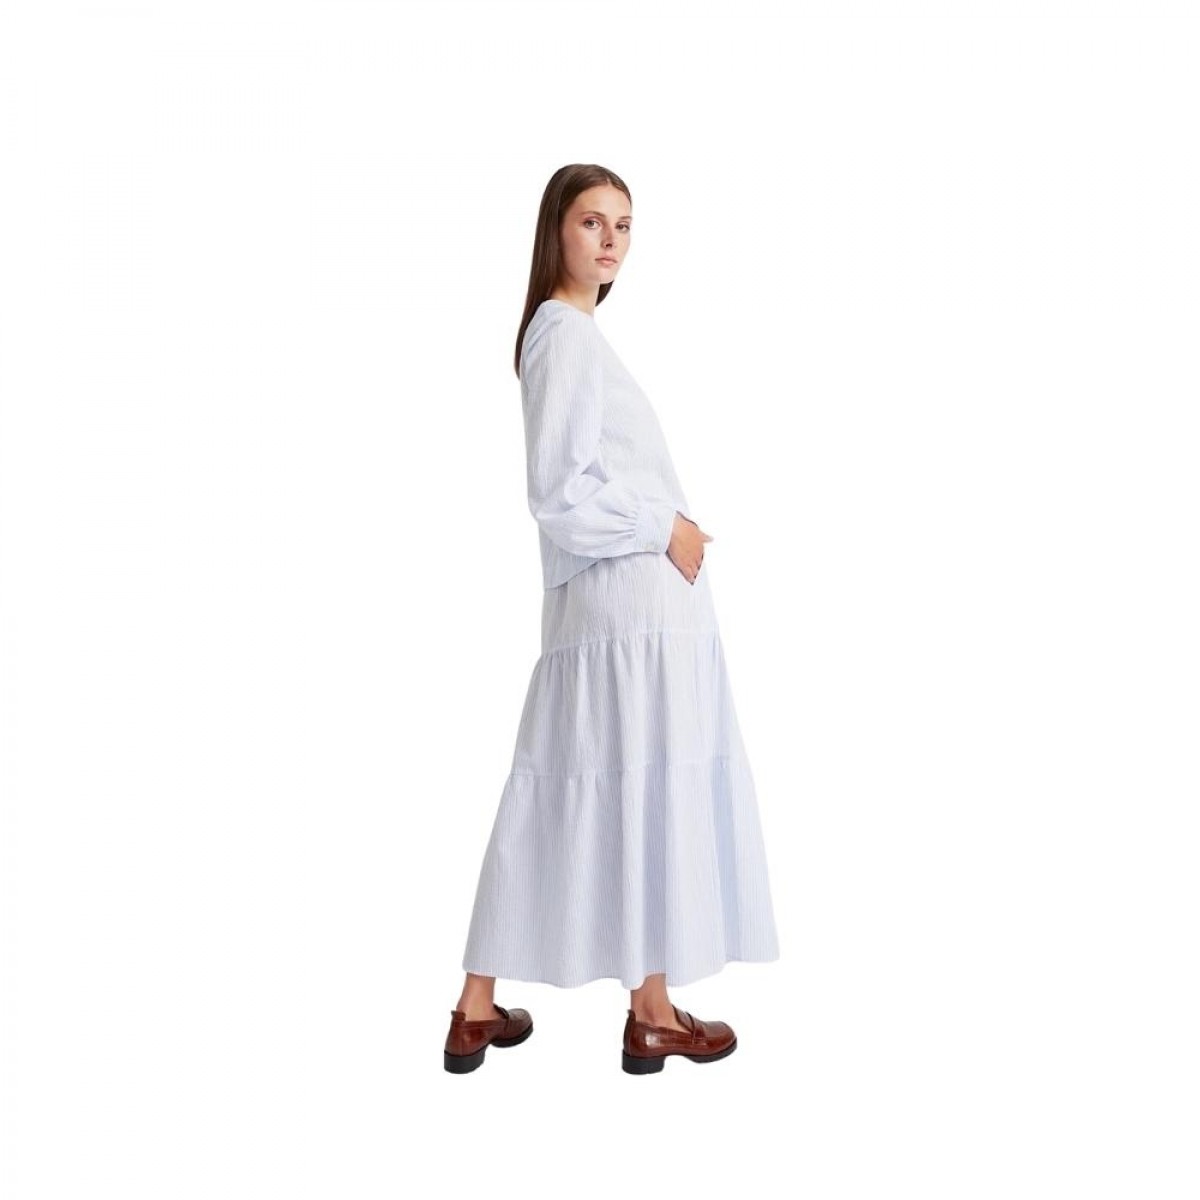 phi skirt - light blue / white stripe - model bagfra 